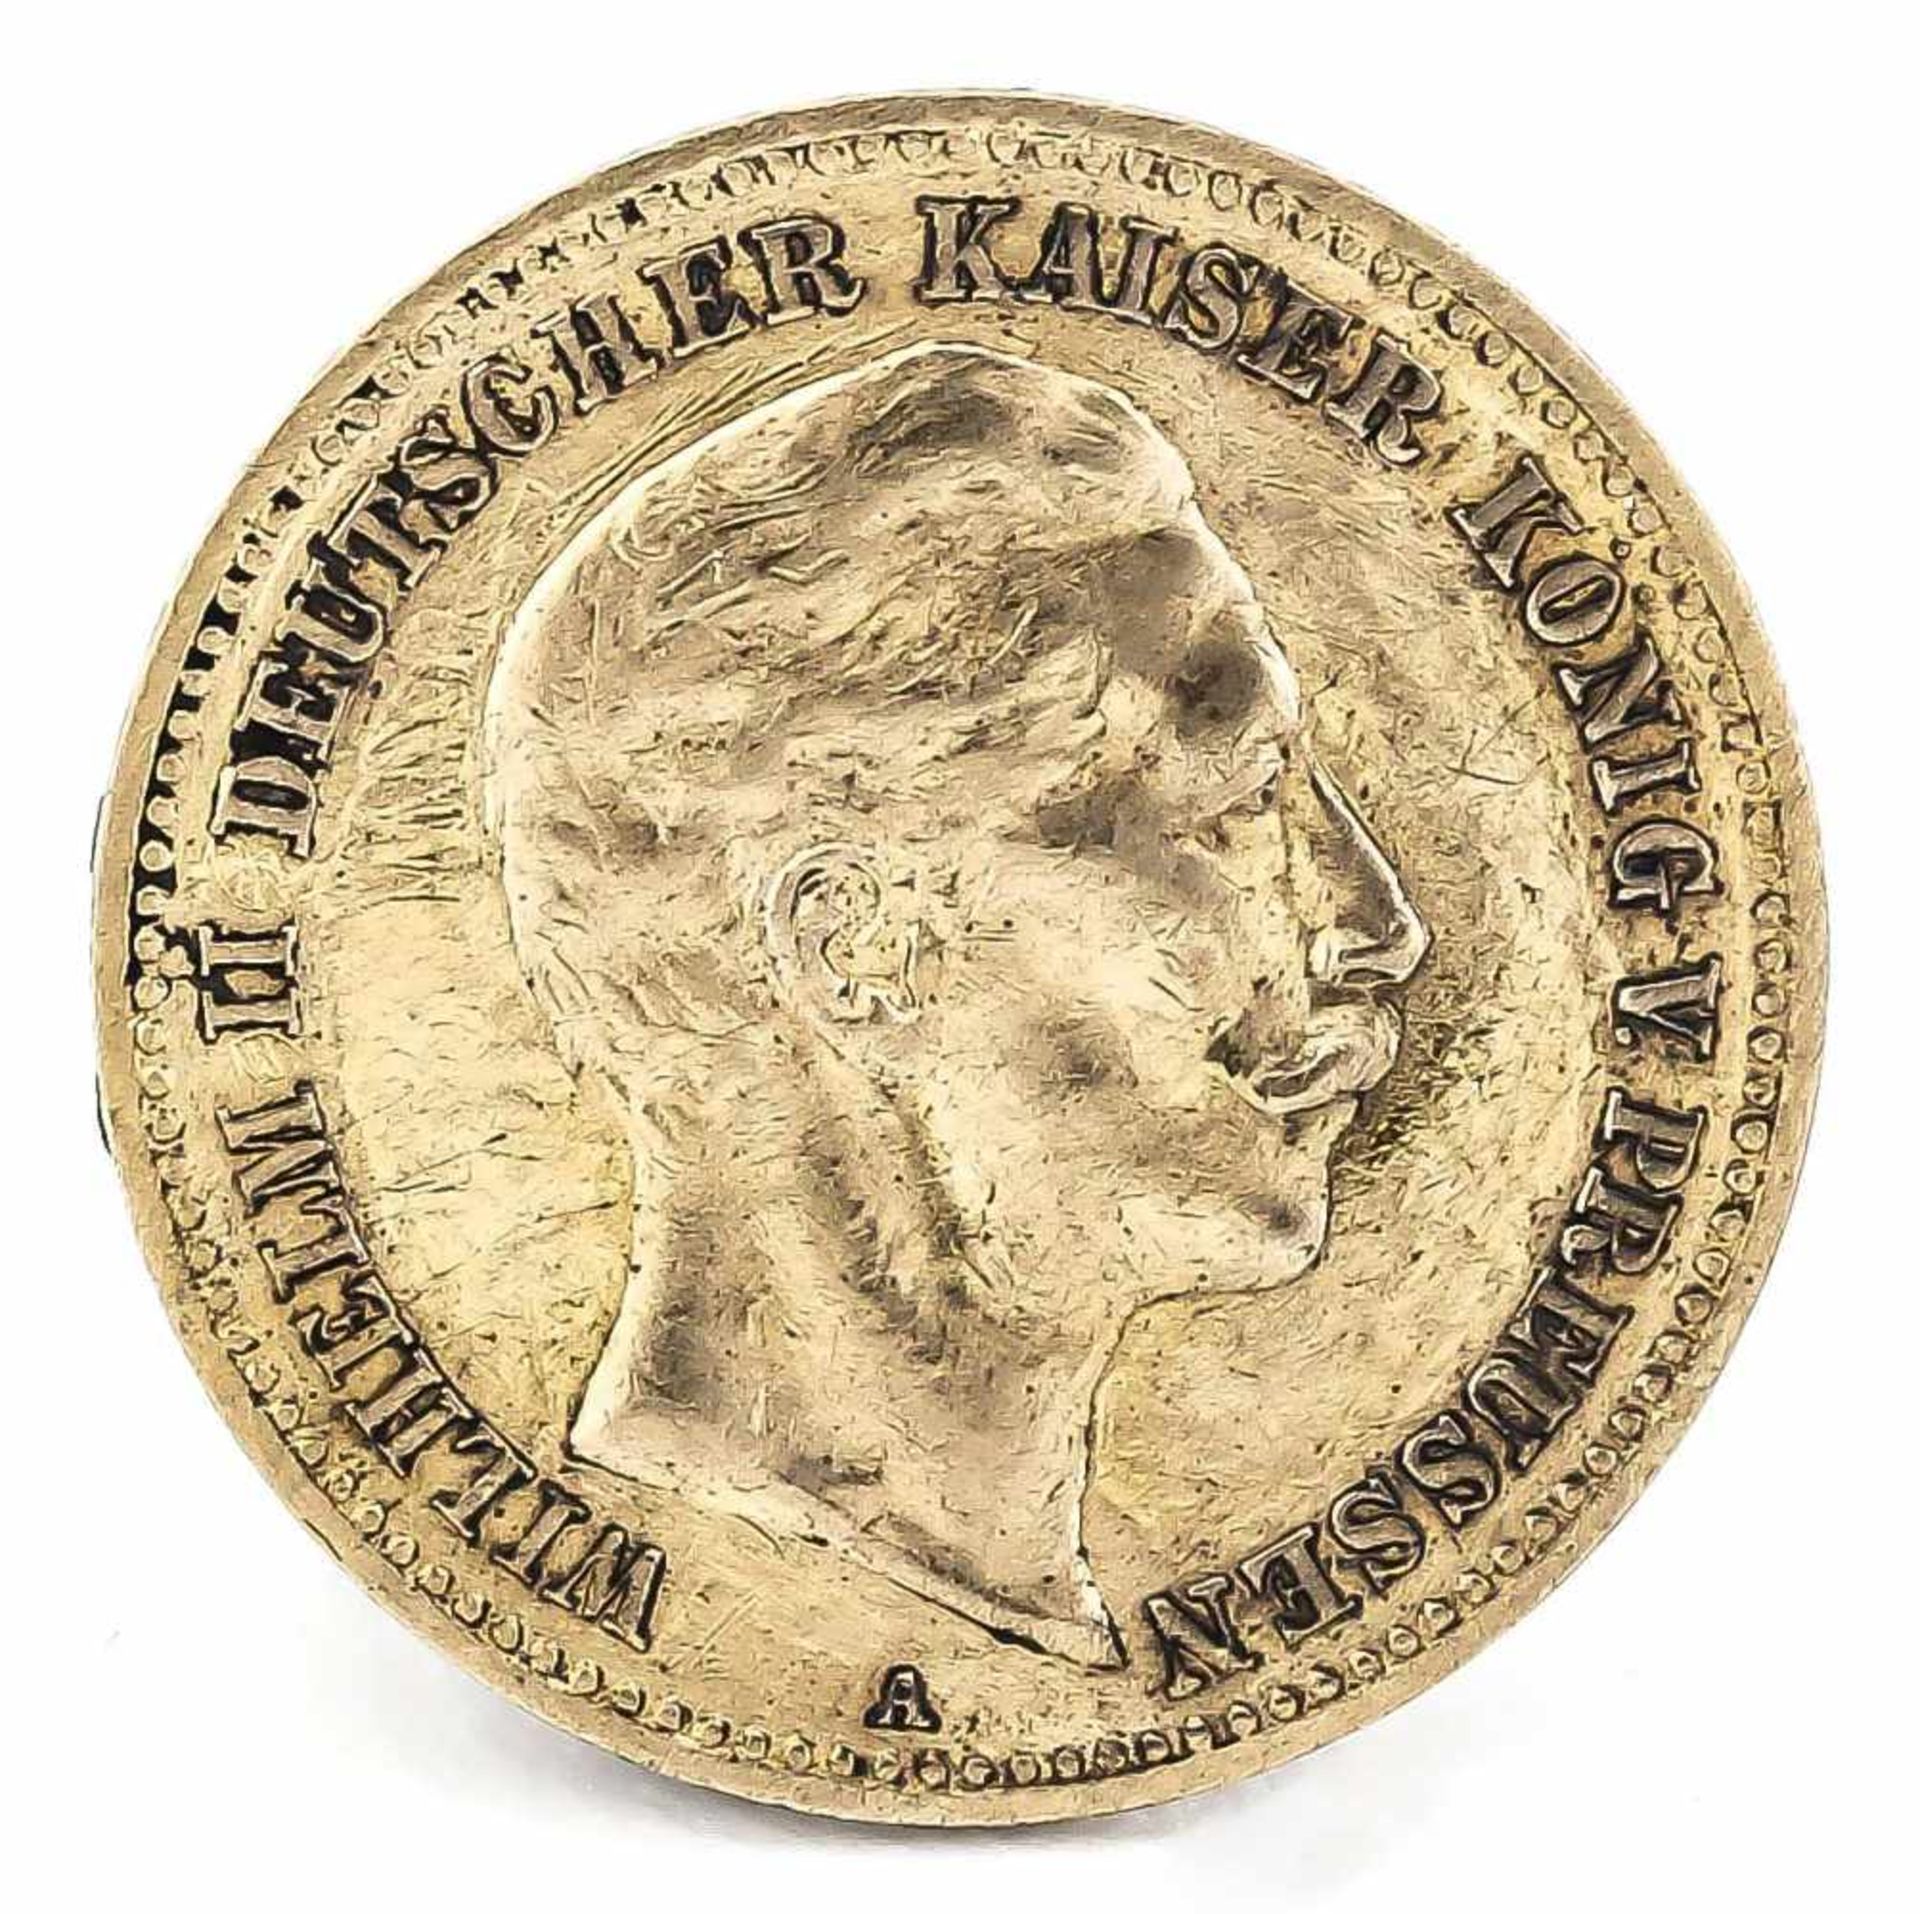 10 Mark, Preußen, Wilhelm II. Deutscher Kaiser König von Preußen, 1890 A, in s-ss